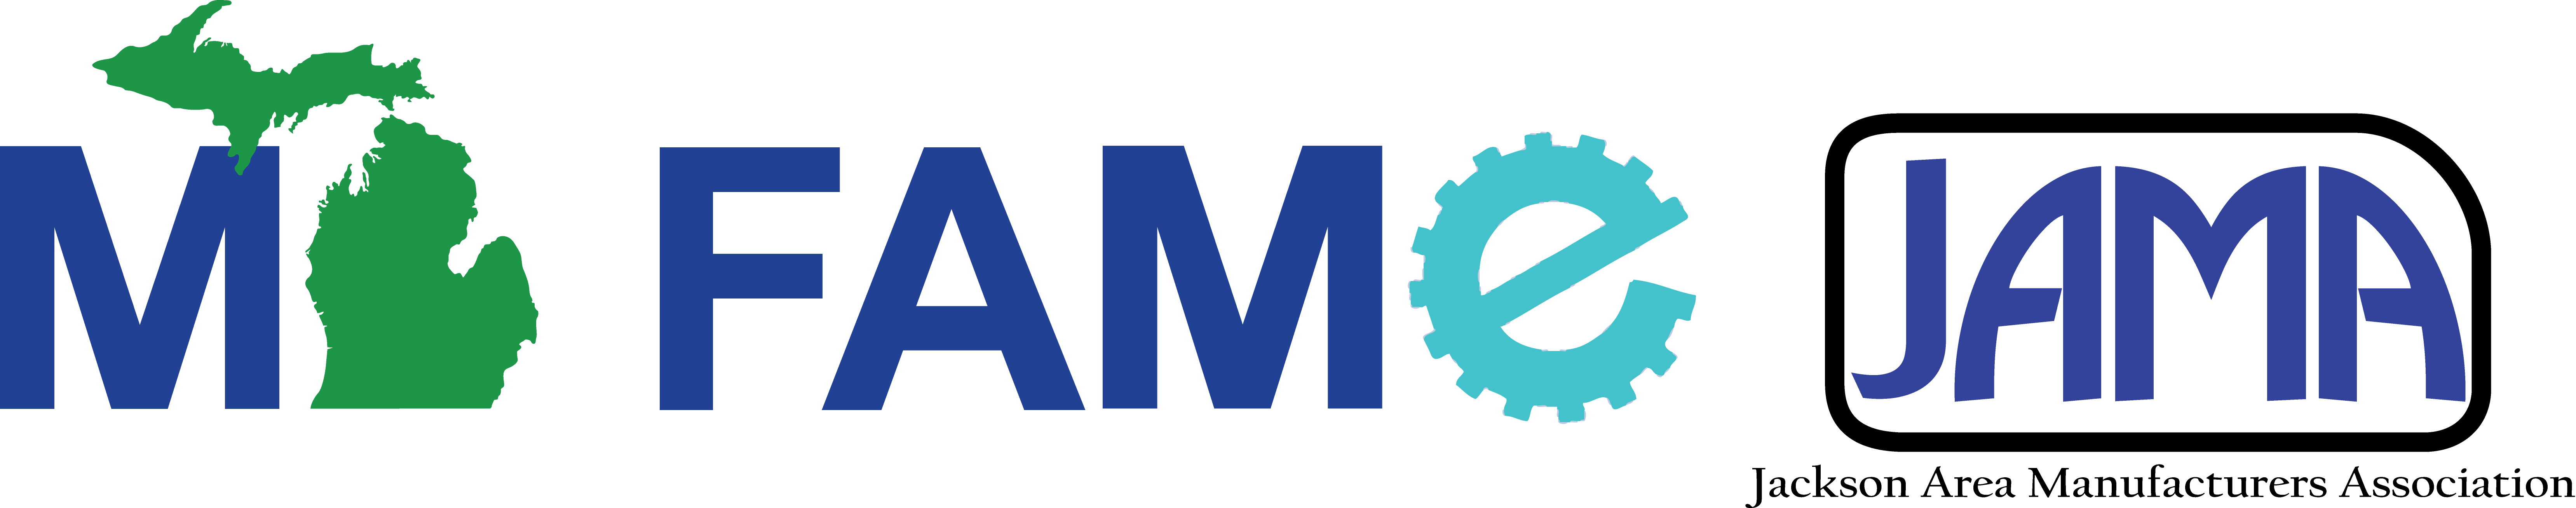 MI FAME JAMA Logo